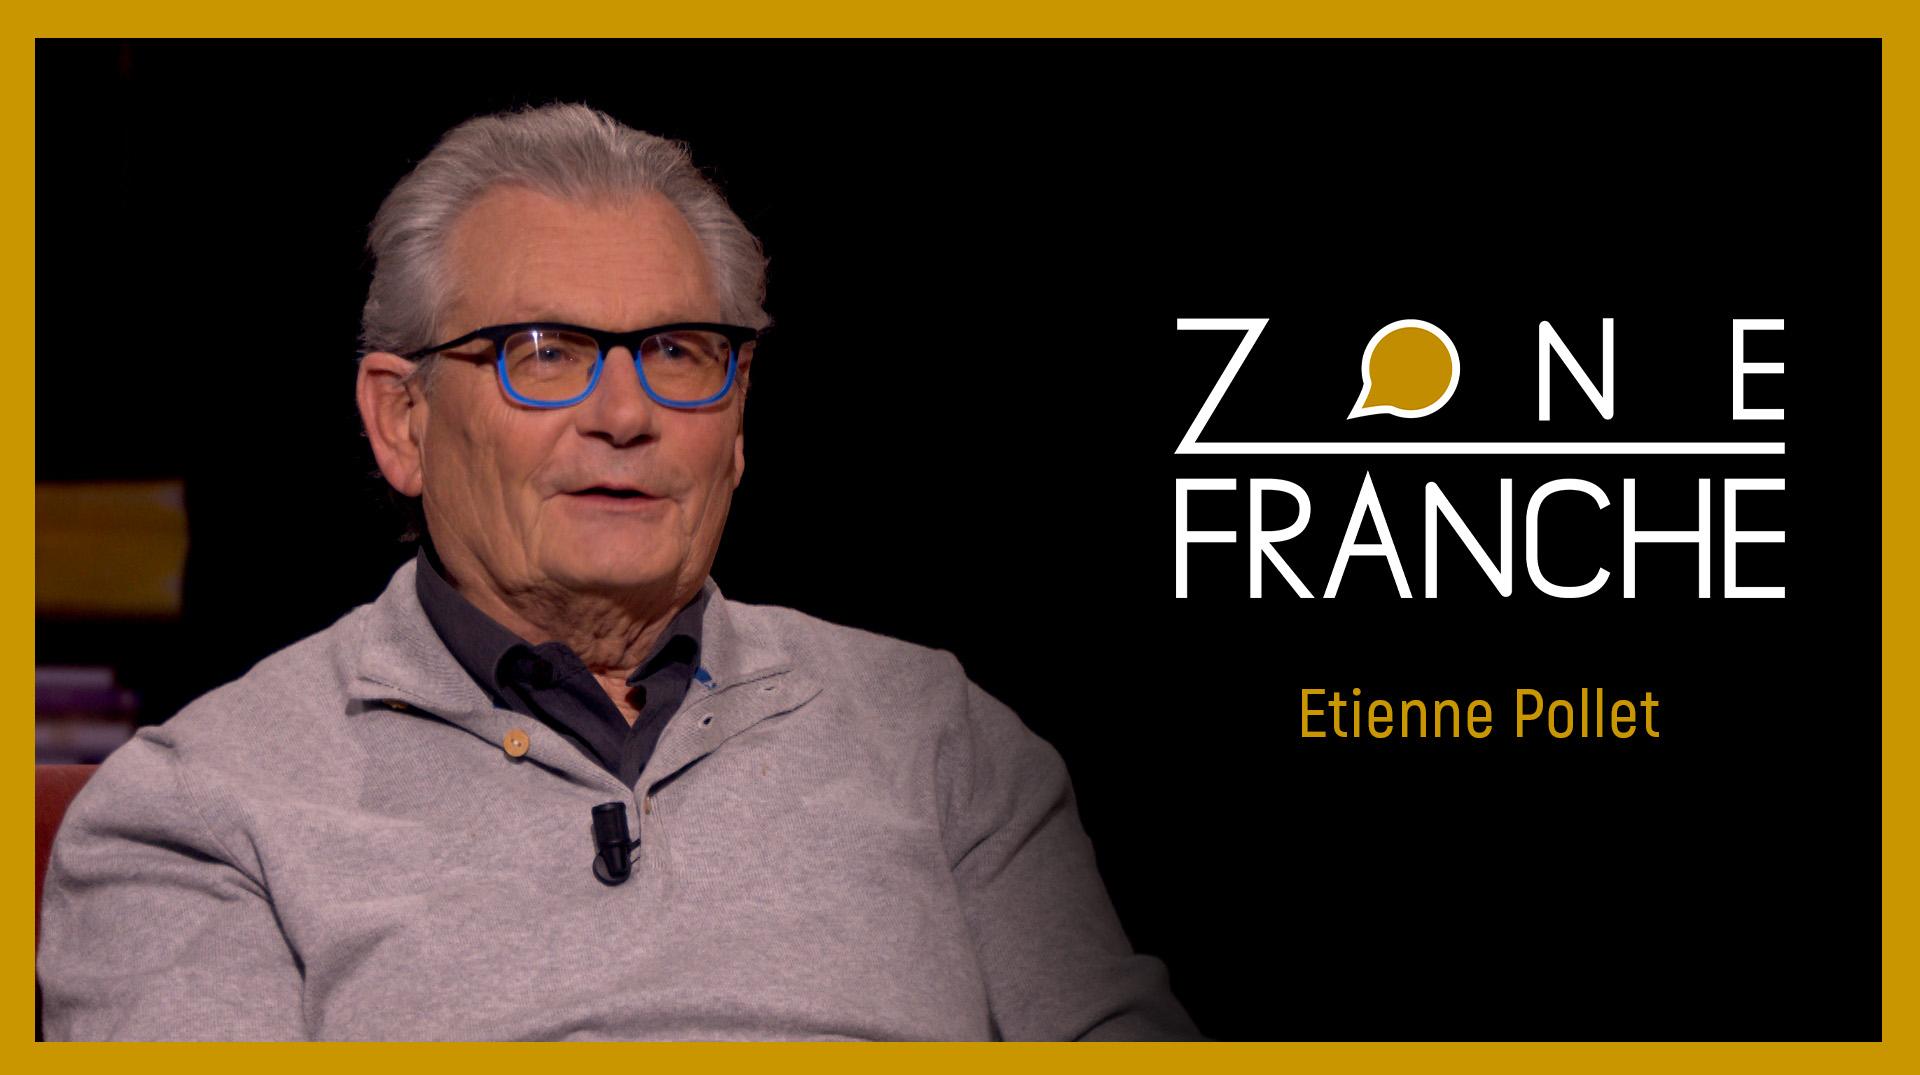 Zone franche avec Etienne Pollet, mémoire vivante de la maison d'édition Casterman